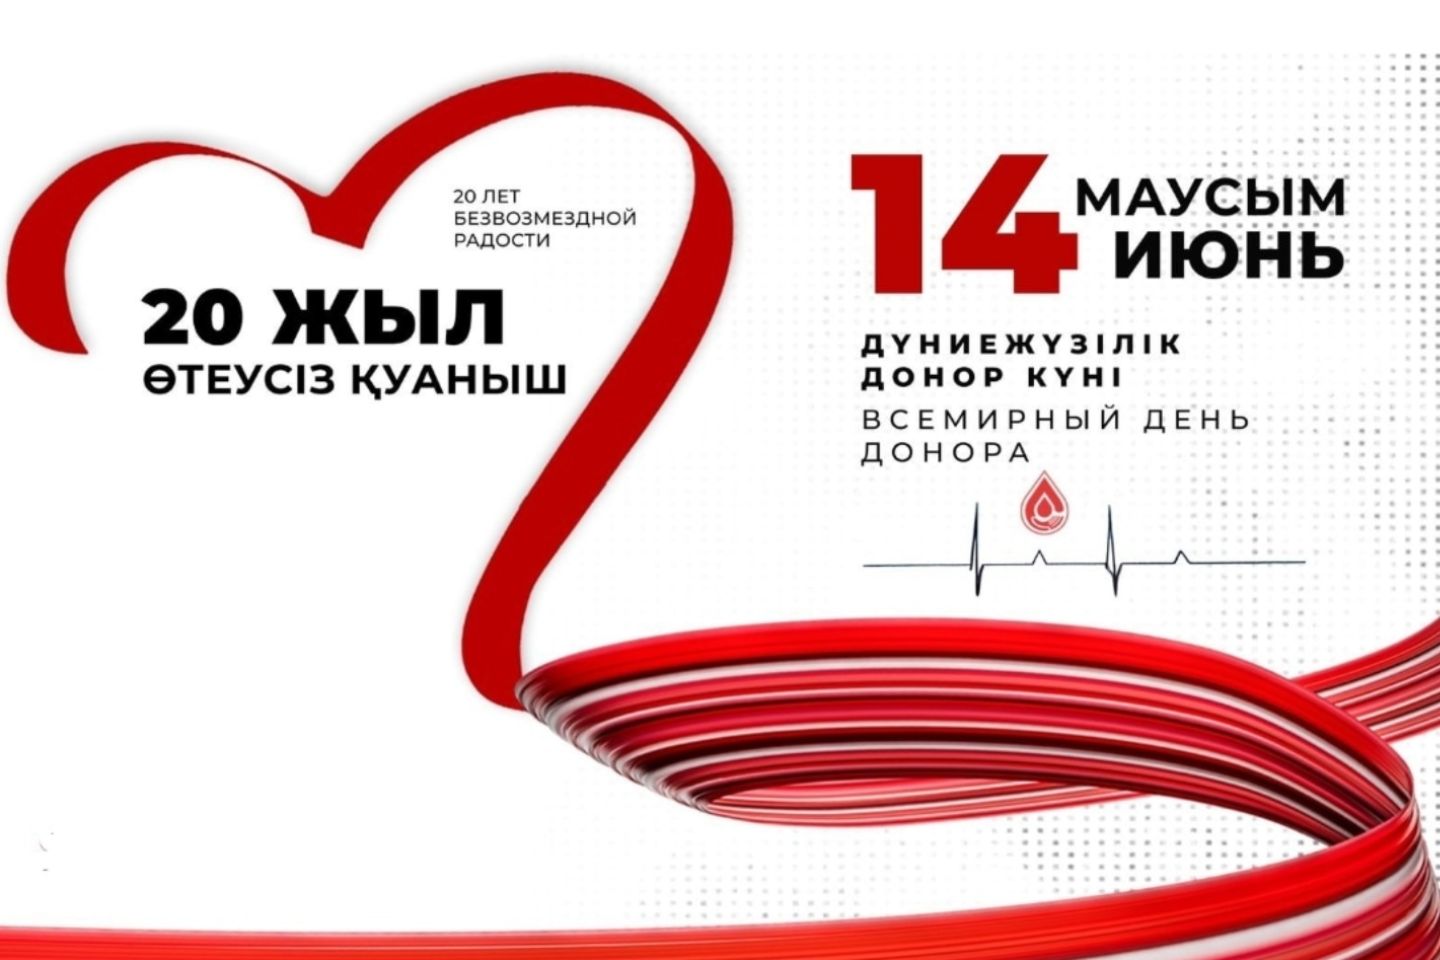 Усть-Каменогорск и ВКО / Всемирный день донора крови отметят в Усть-Каменогорске